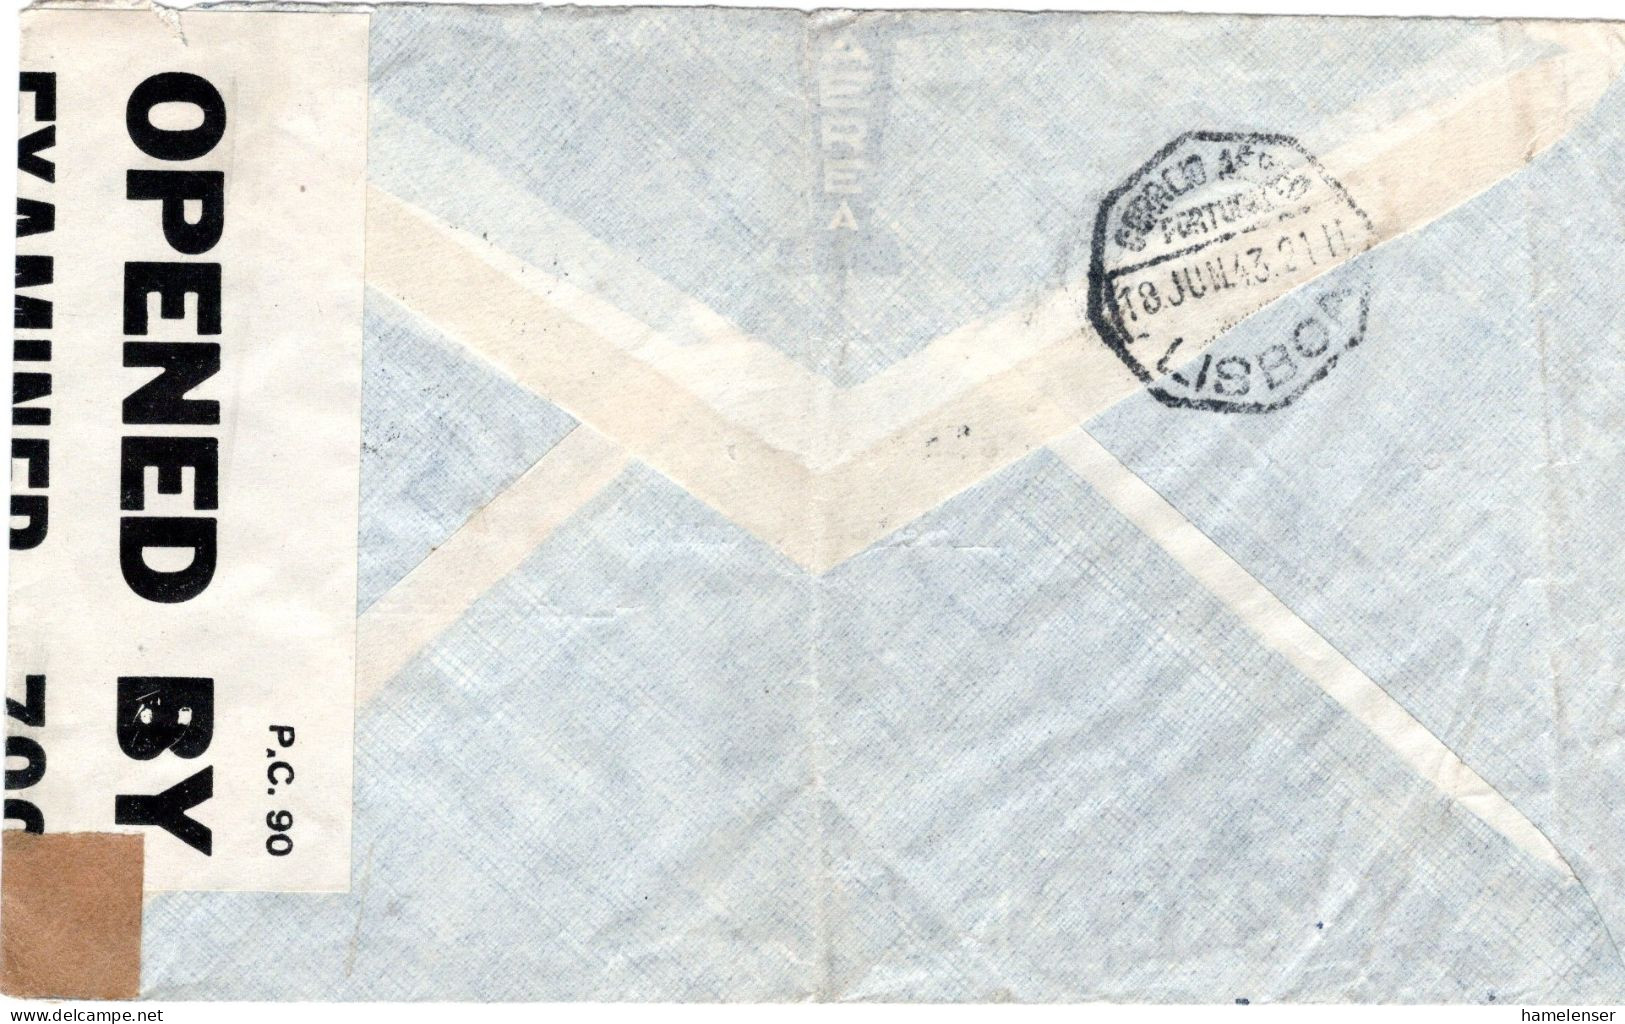 71720 - Portugal - 1943 - 2@1$75 Lusiaden A LpBf SILVES -> LISBOA -> Grossbritannien, M Brit Zensur - Lettres & Documents